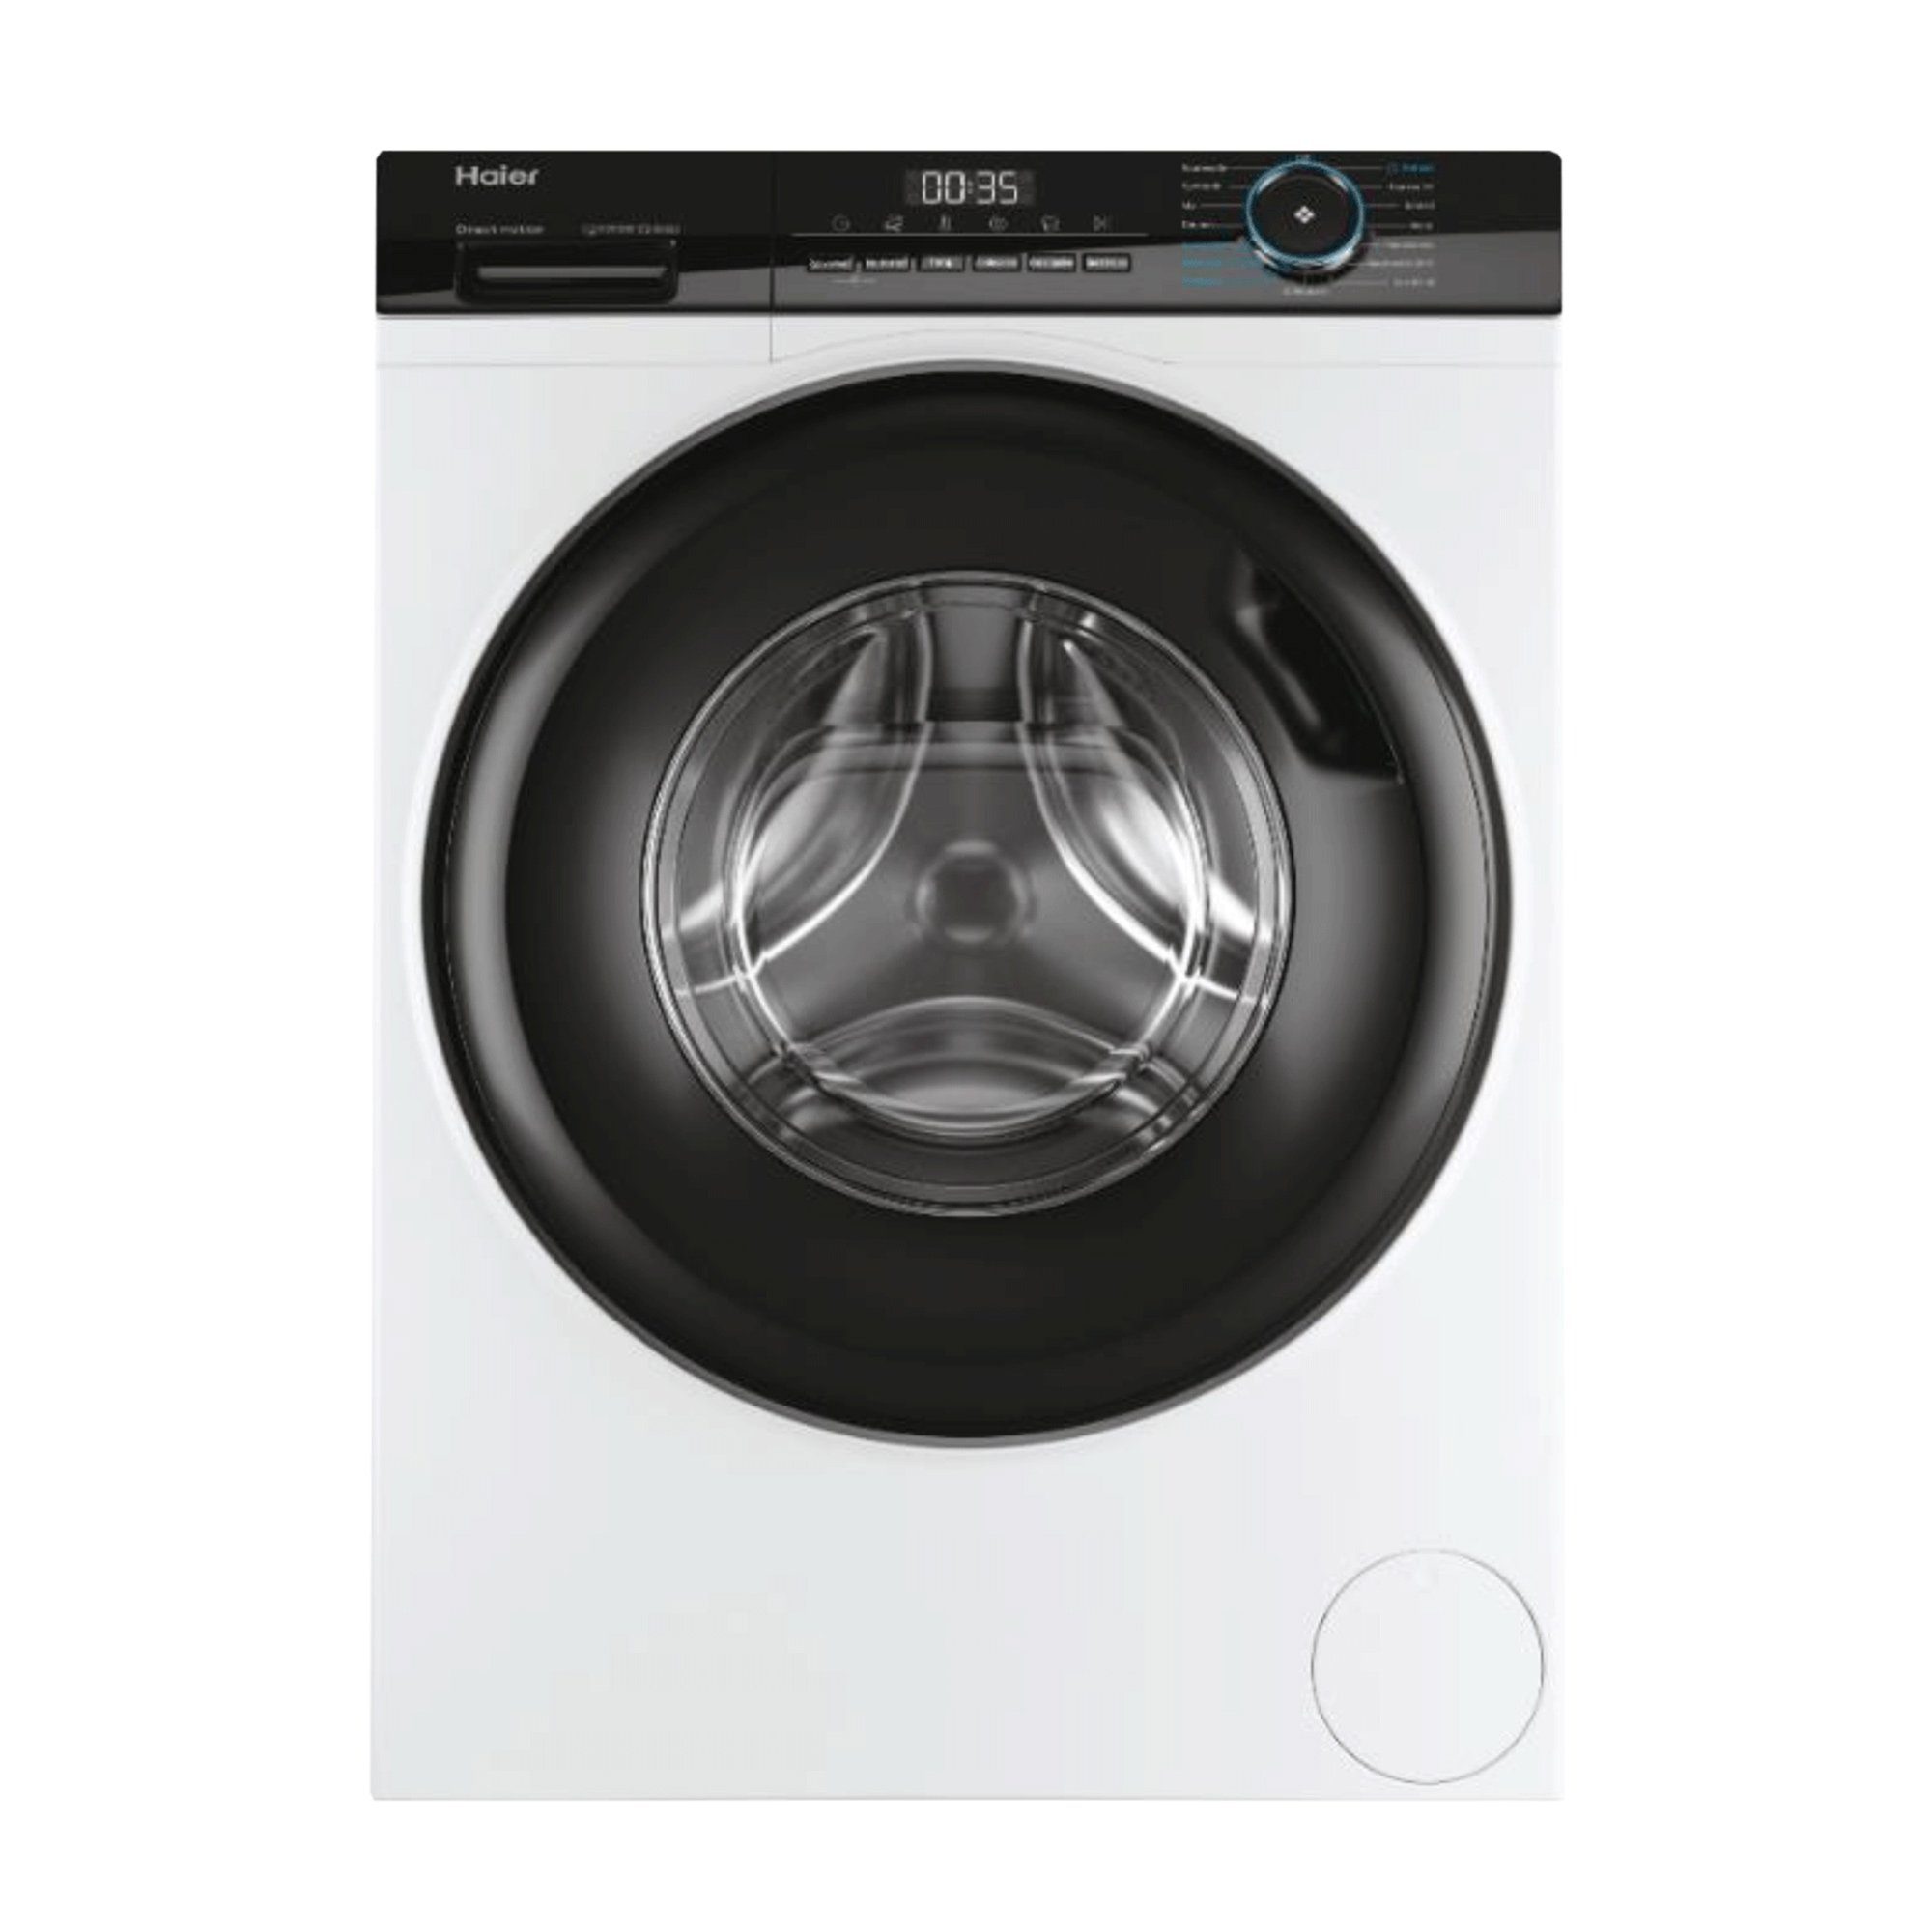 Haier Waschmaschine HW80-B14939, 8,00 kg, 1400 U/min, Das Hygiene Plus:  ABT® Antibakterielle Technologie